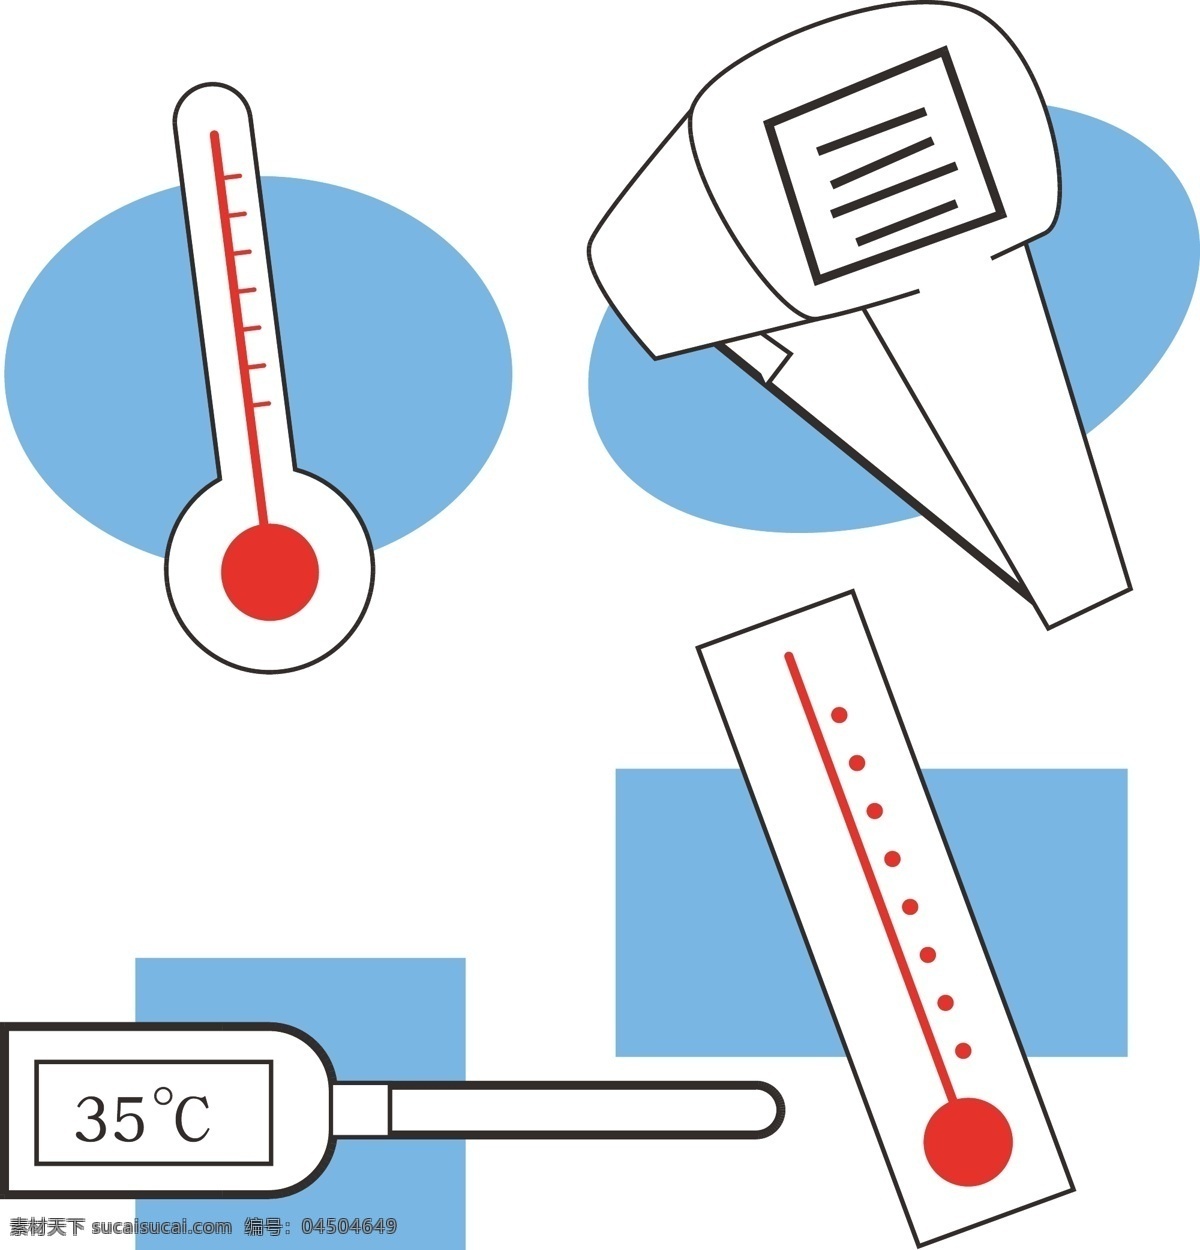 温度计图片 卡通 摄氏度 气候 寒冷 华氏 热 图标 插图 仪器 孤立 测量 医学 对象 规模 热度 温度 状态 心情 能量 卡通设计